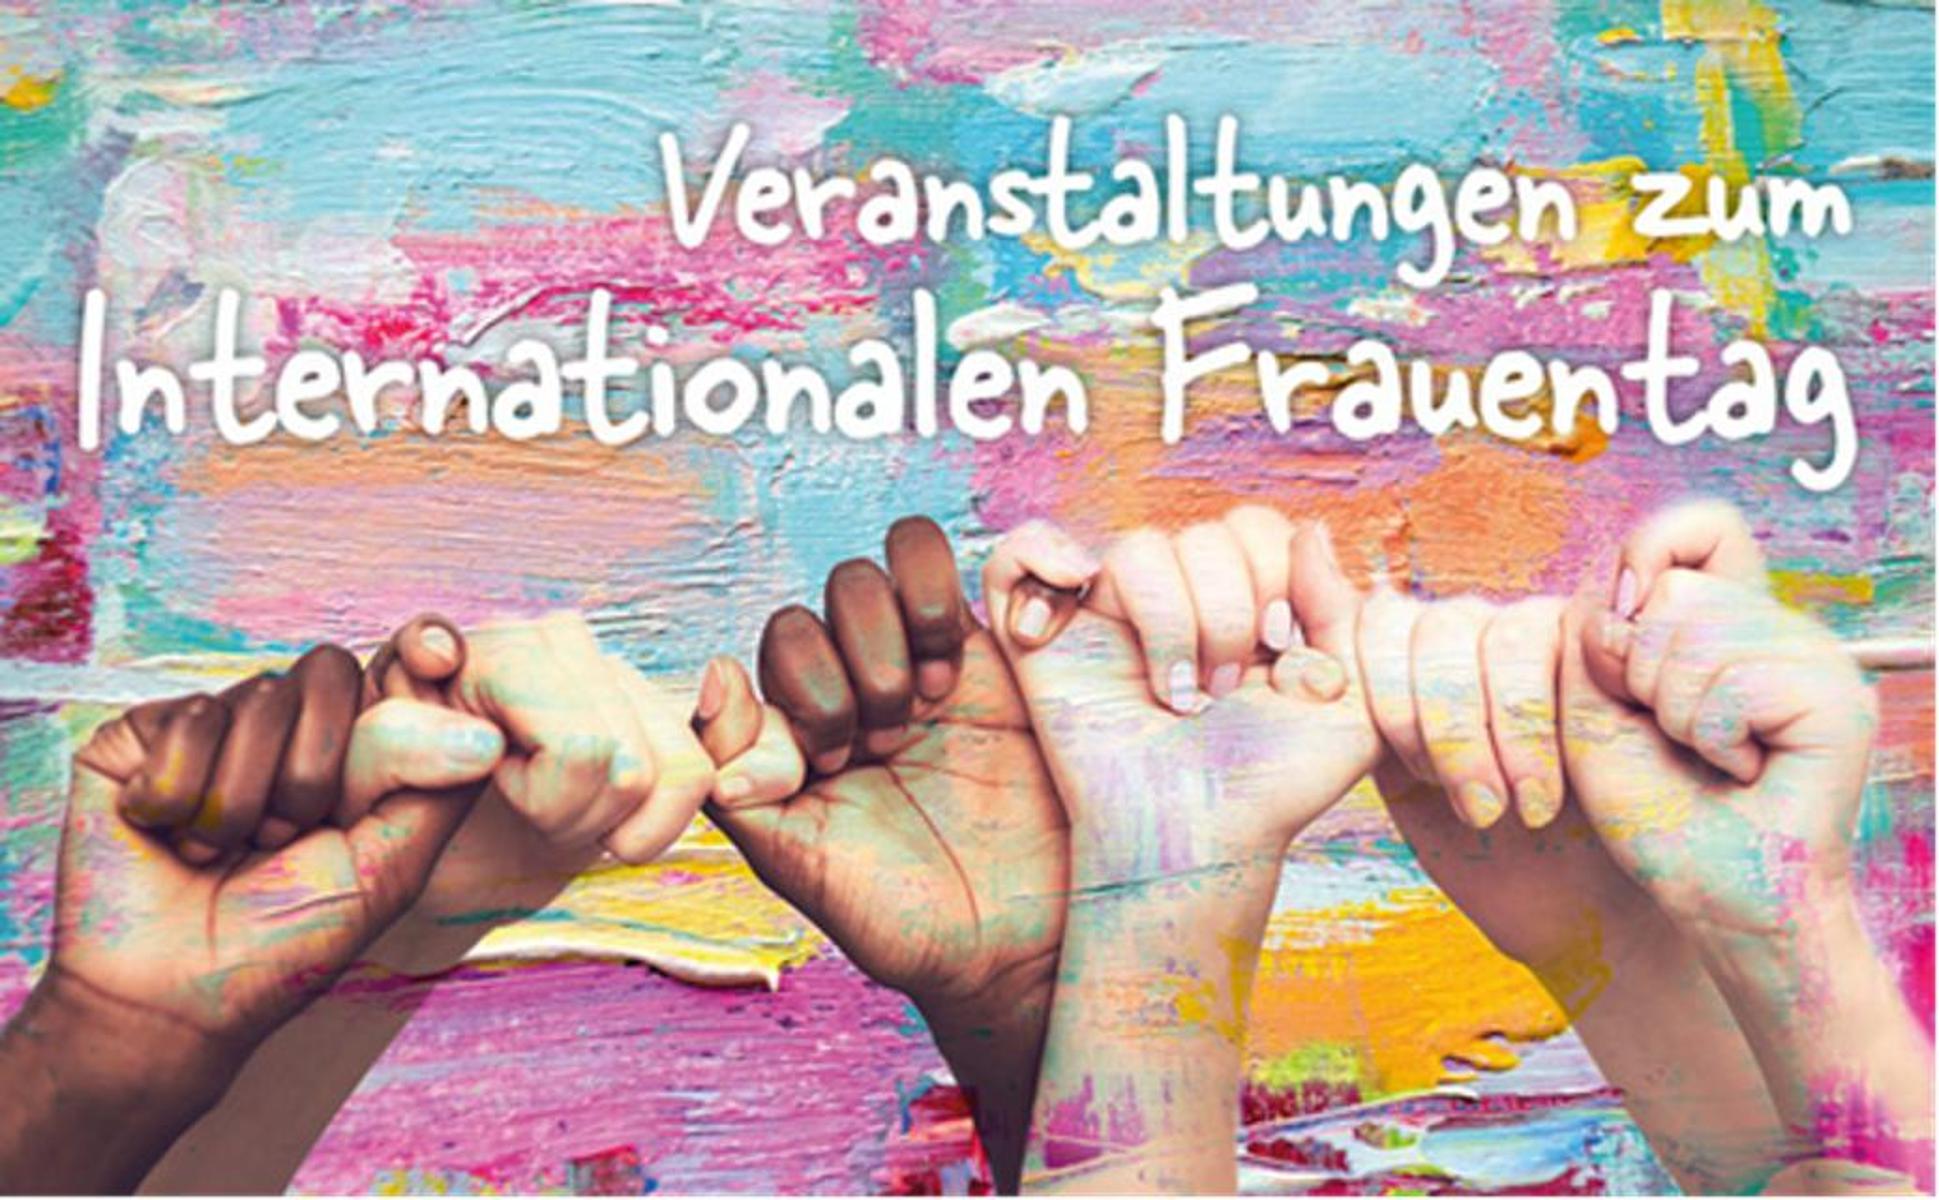 Zum Internationalen Frauentag nimmt das Frauen- und Gleichstellungsbüro Griesheim das Thema “Meine Bedürfnisse, Familie & Job in Einklang bringen - Die große Herausforderung der Care-Arbeit” in den Fokus.